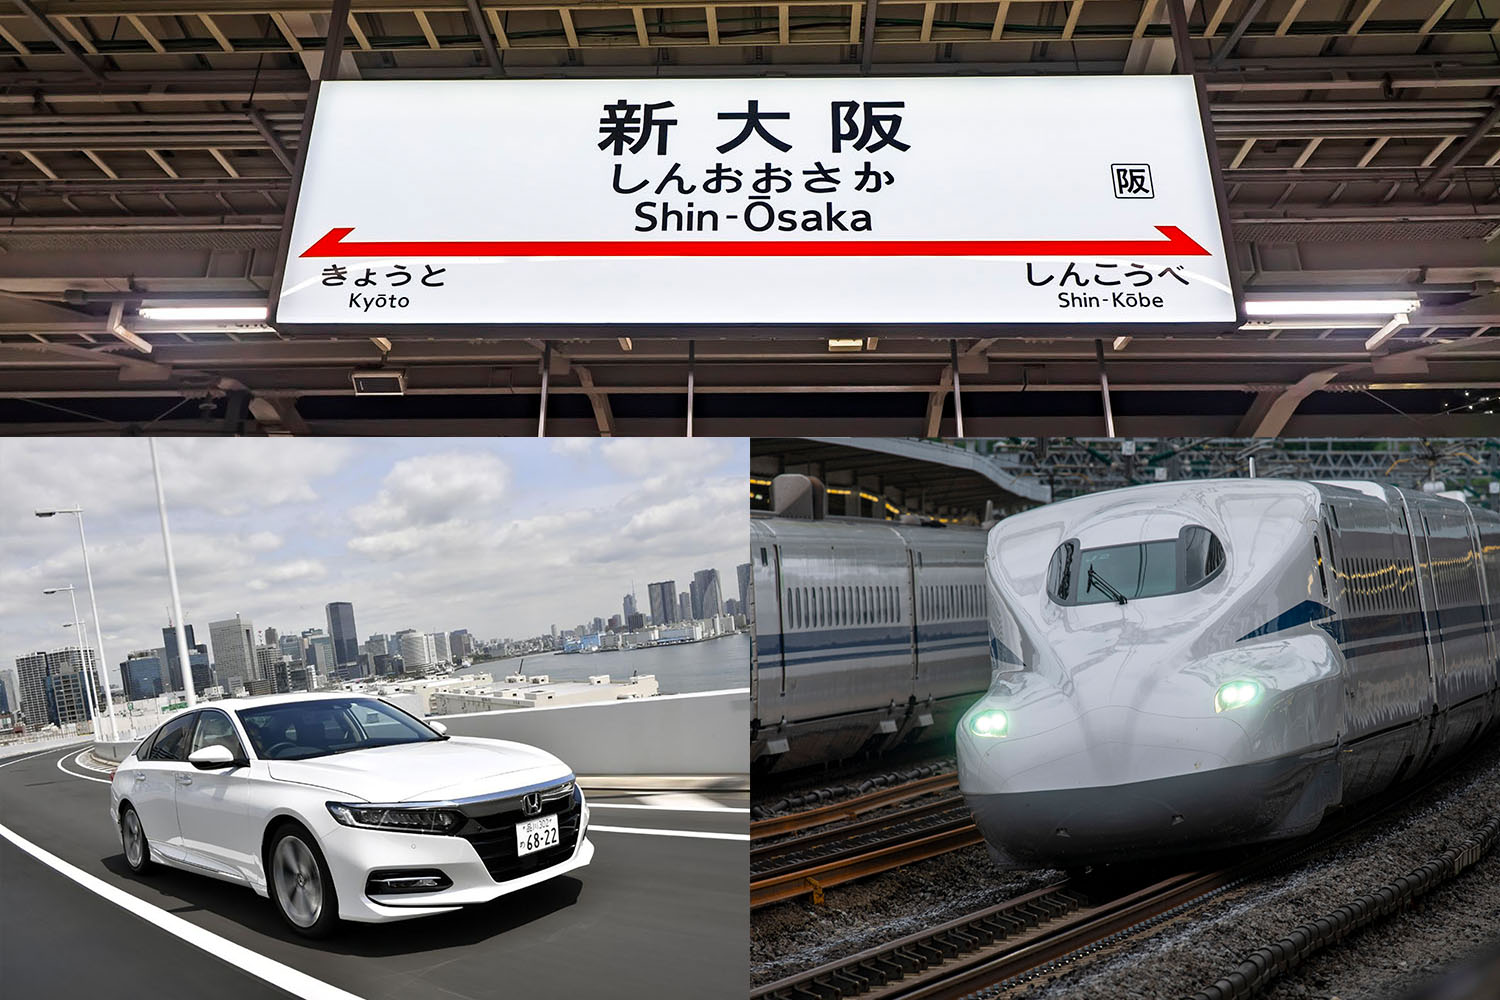 クルマと新幹線で掛かる交通費の差を検証